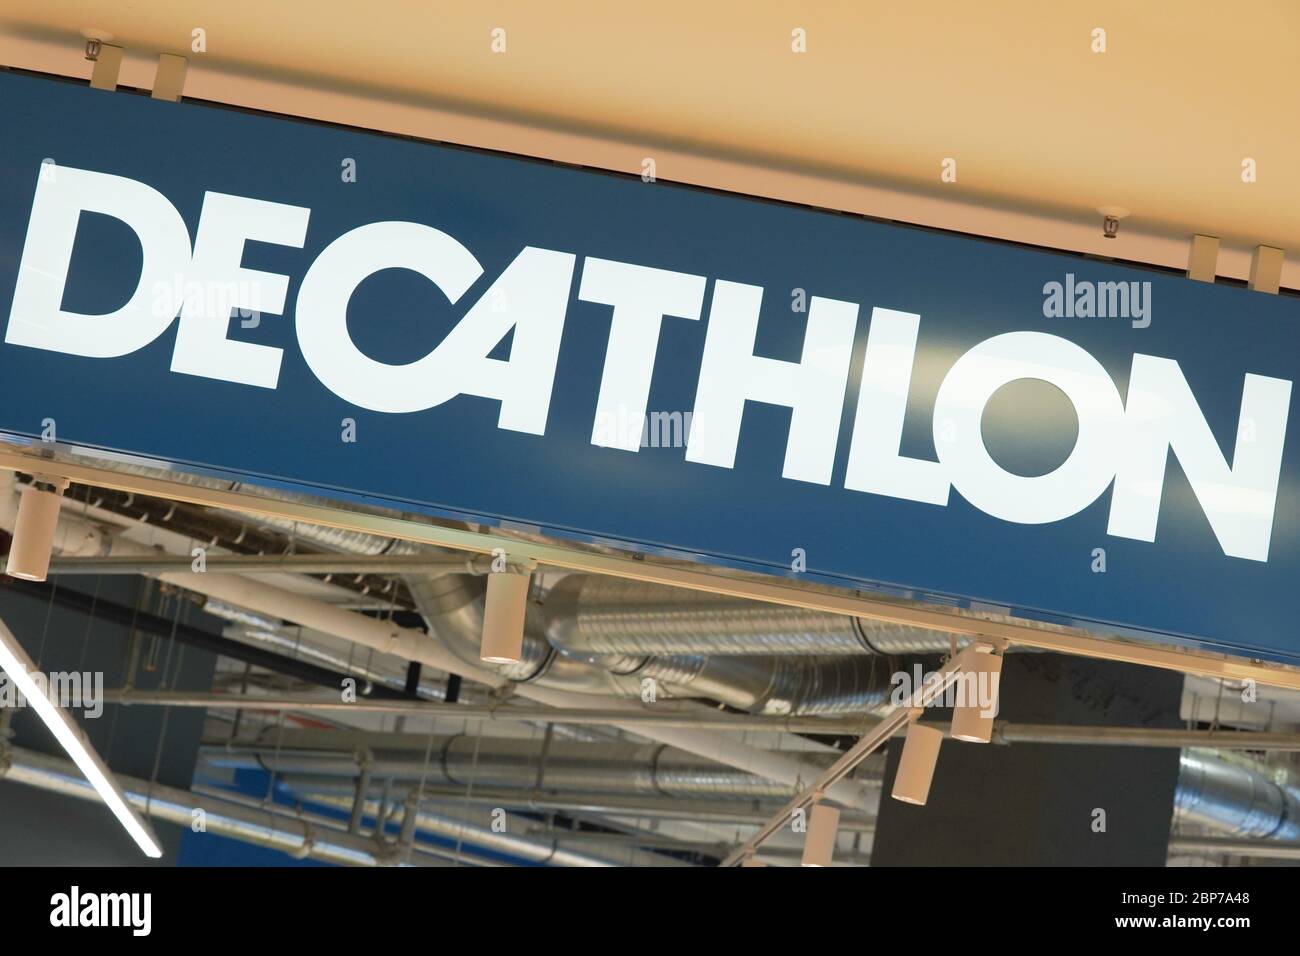 Economy, Decathlon Sports Retailer Stock Photo